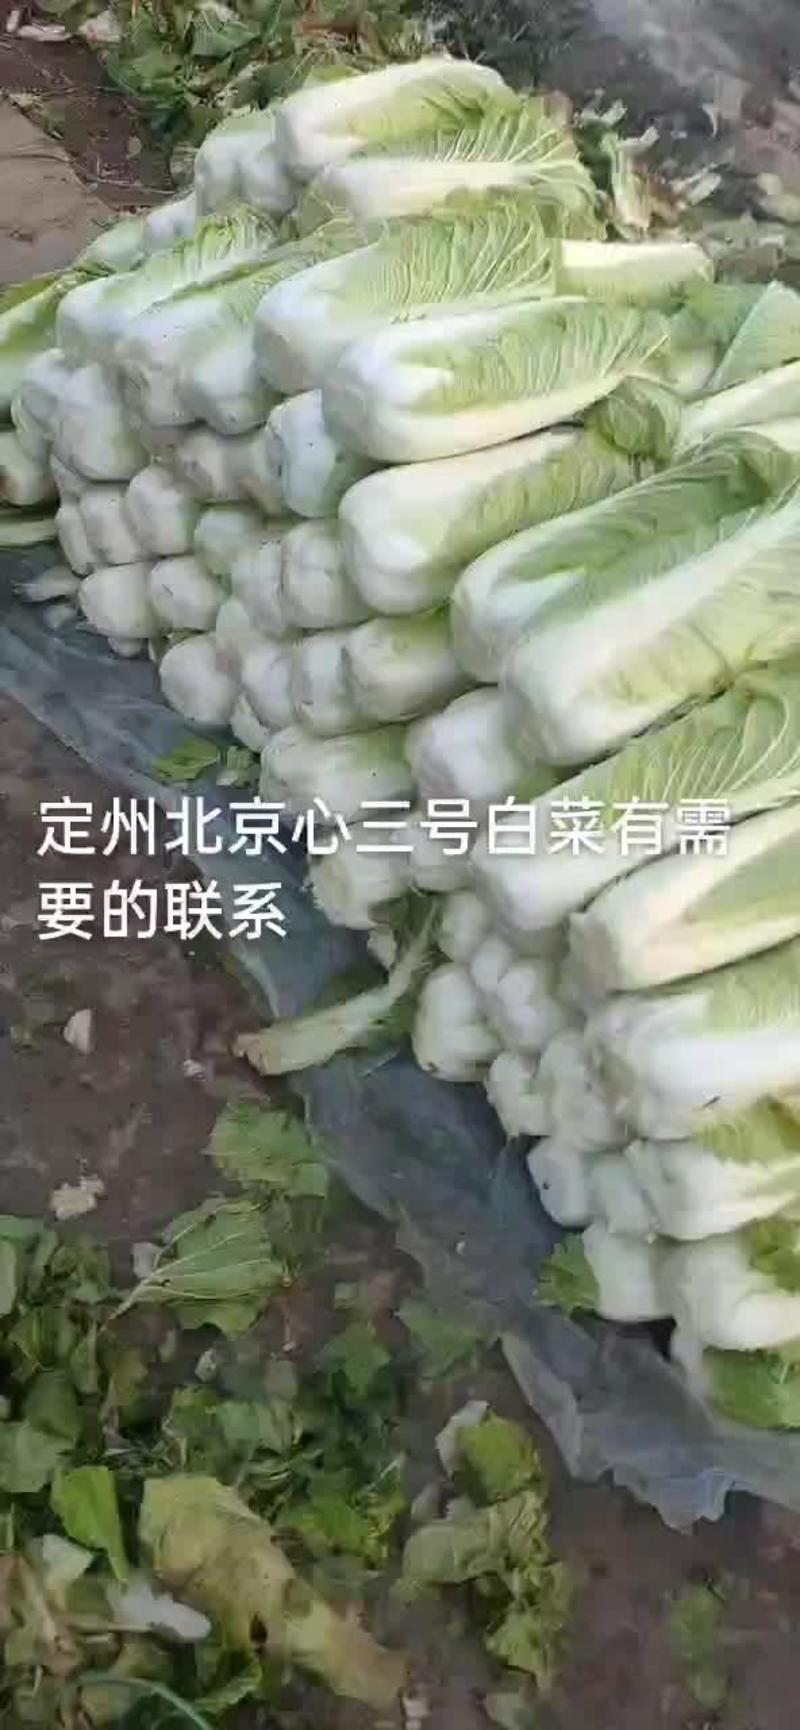 产地北京新三号大白菜